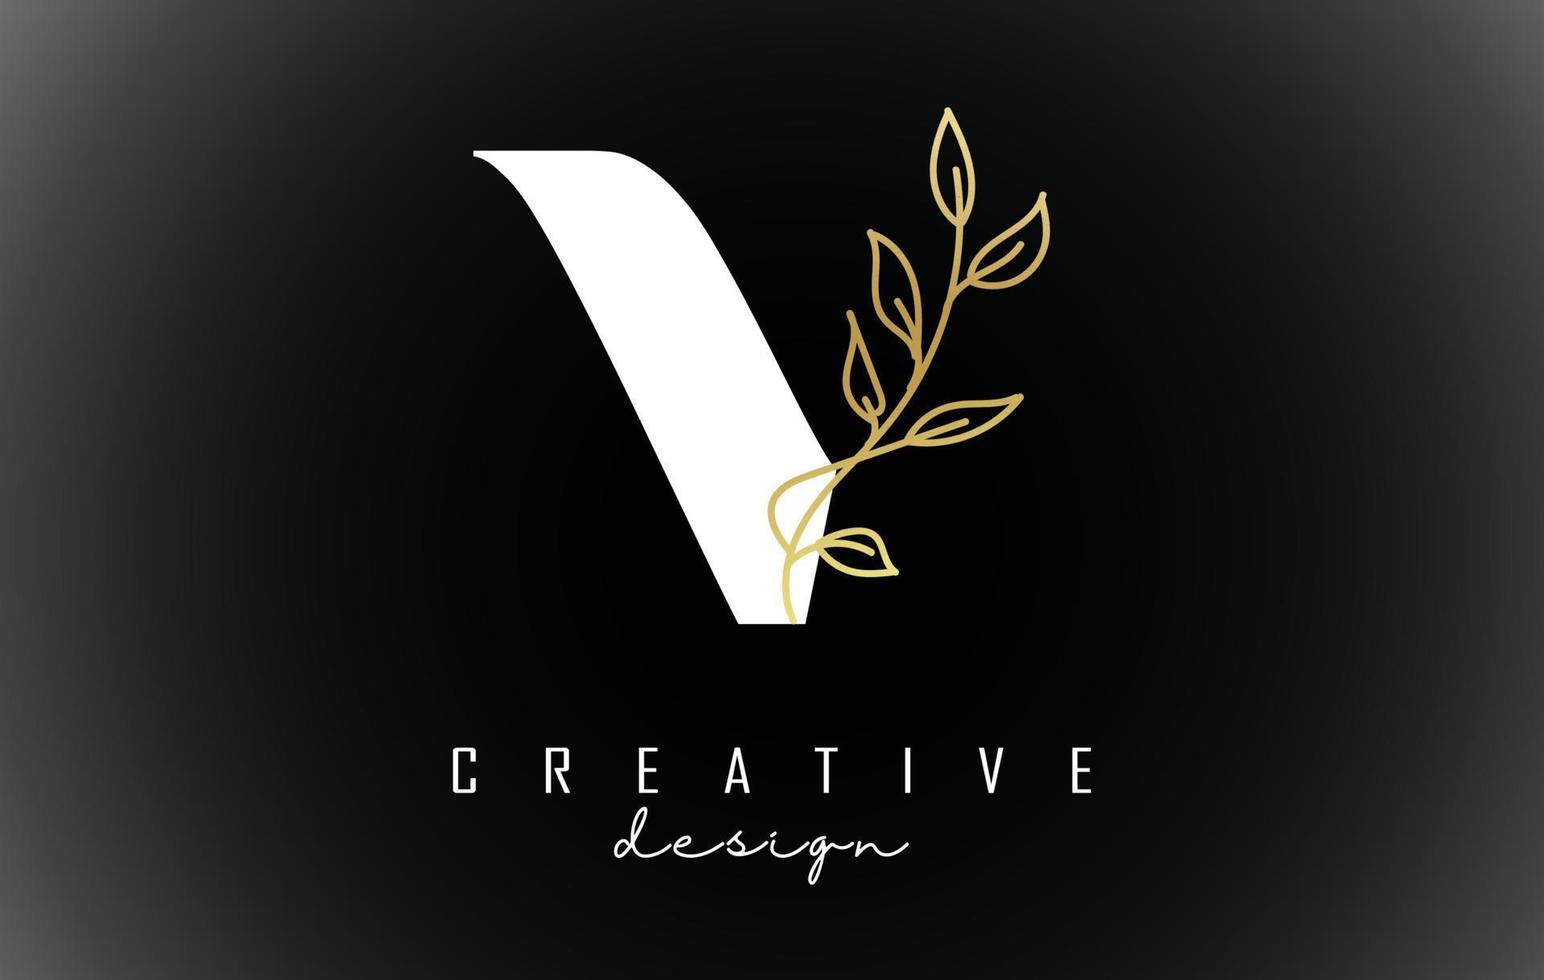 design de logotipo de letra v branco com ilustração em vetor ramo de folhas douradas.